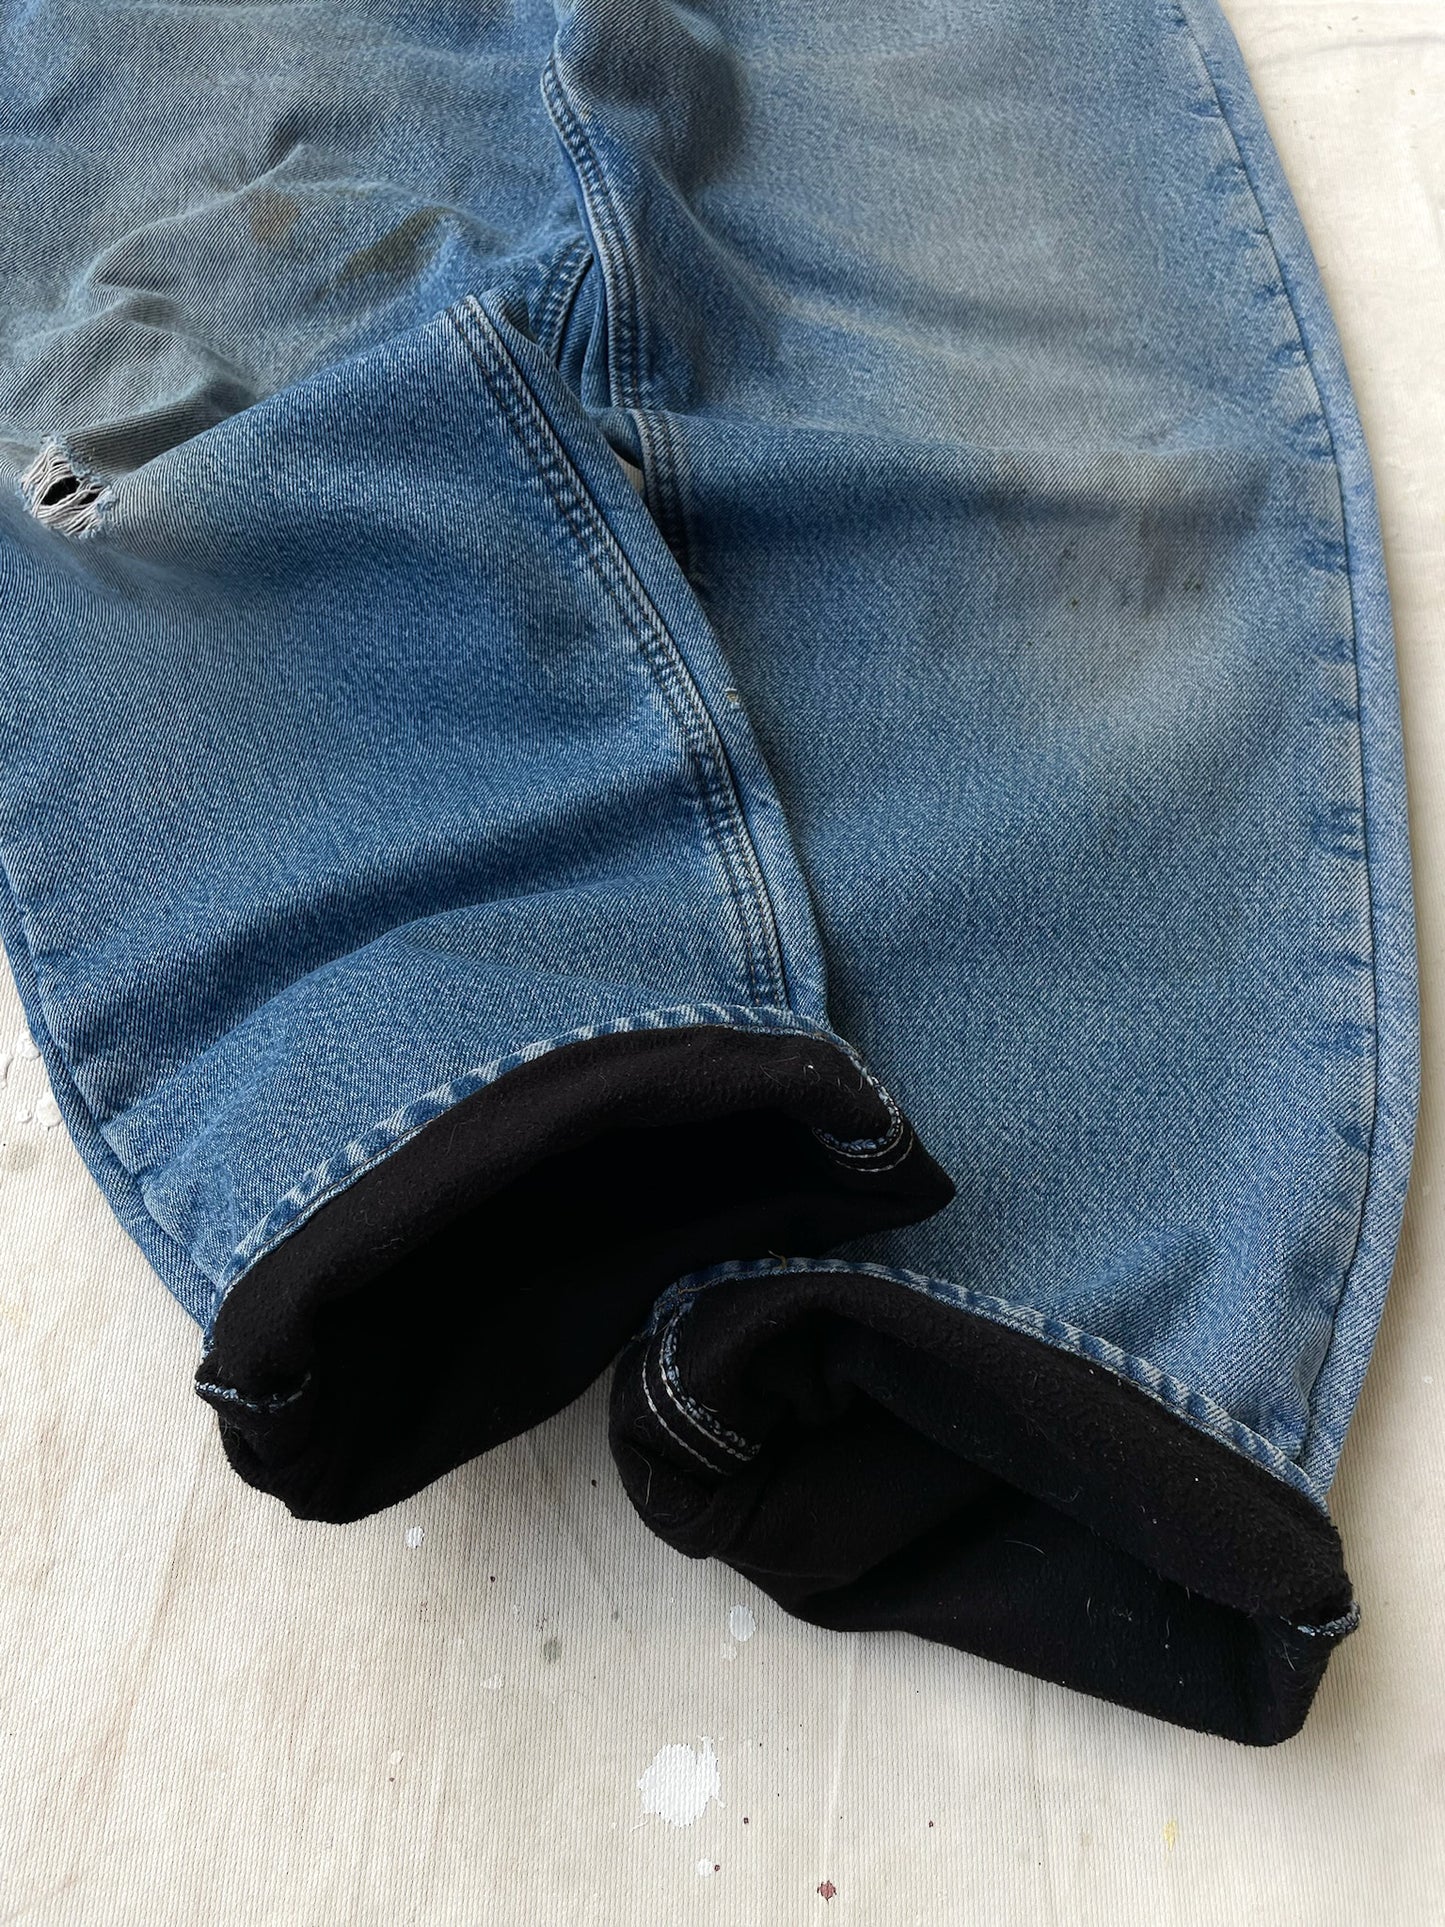 Carhartt Fleece Lined Jeans—[36x30]